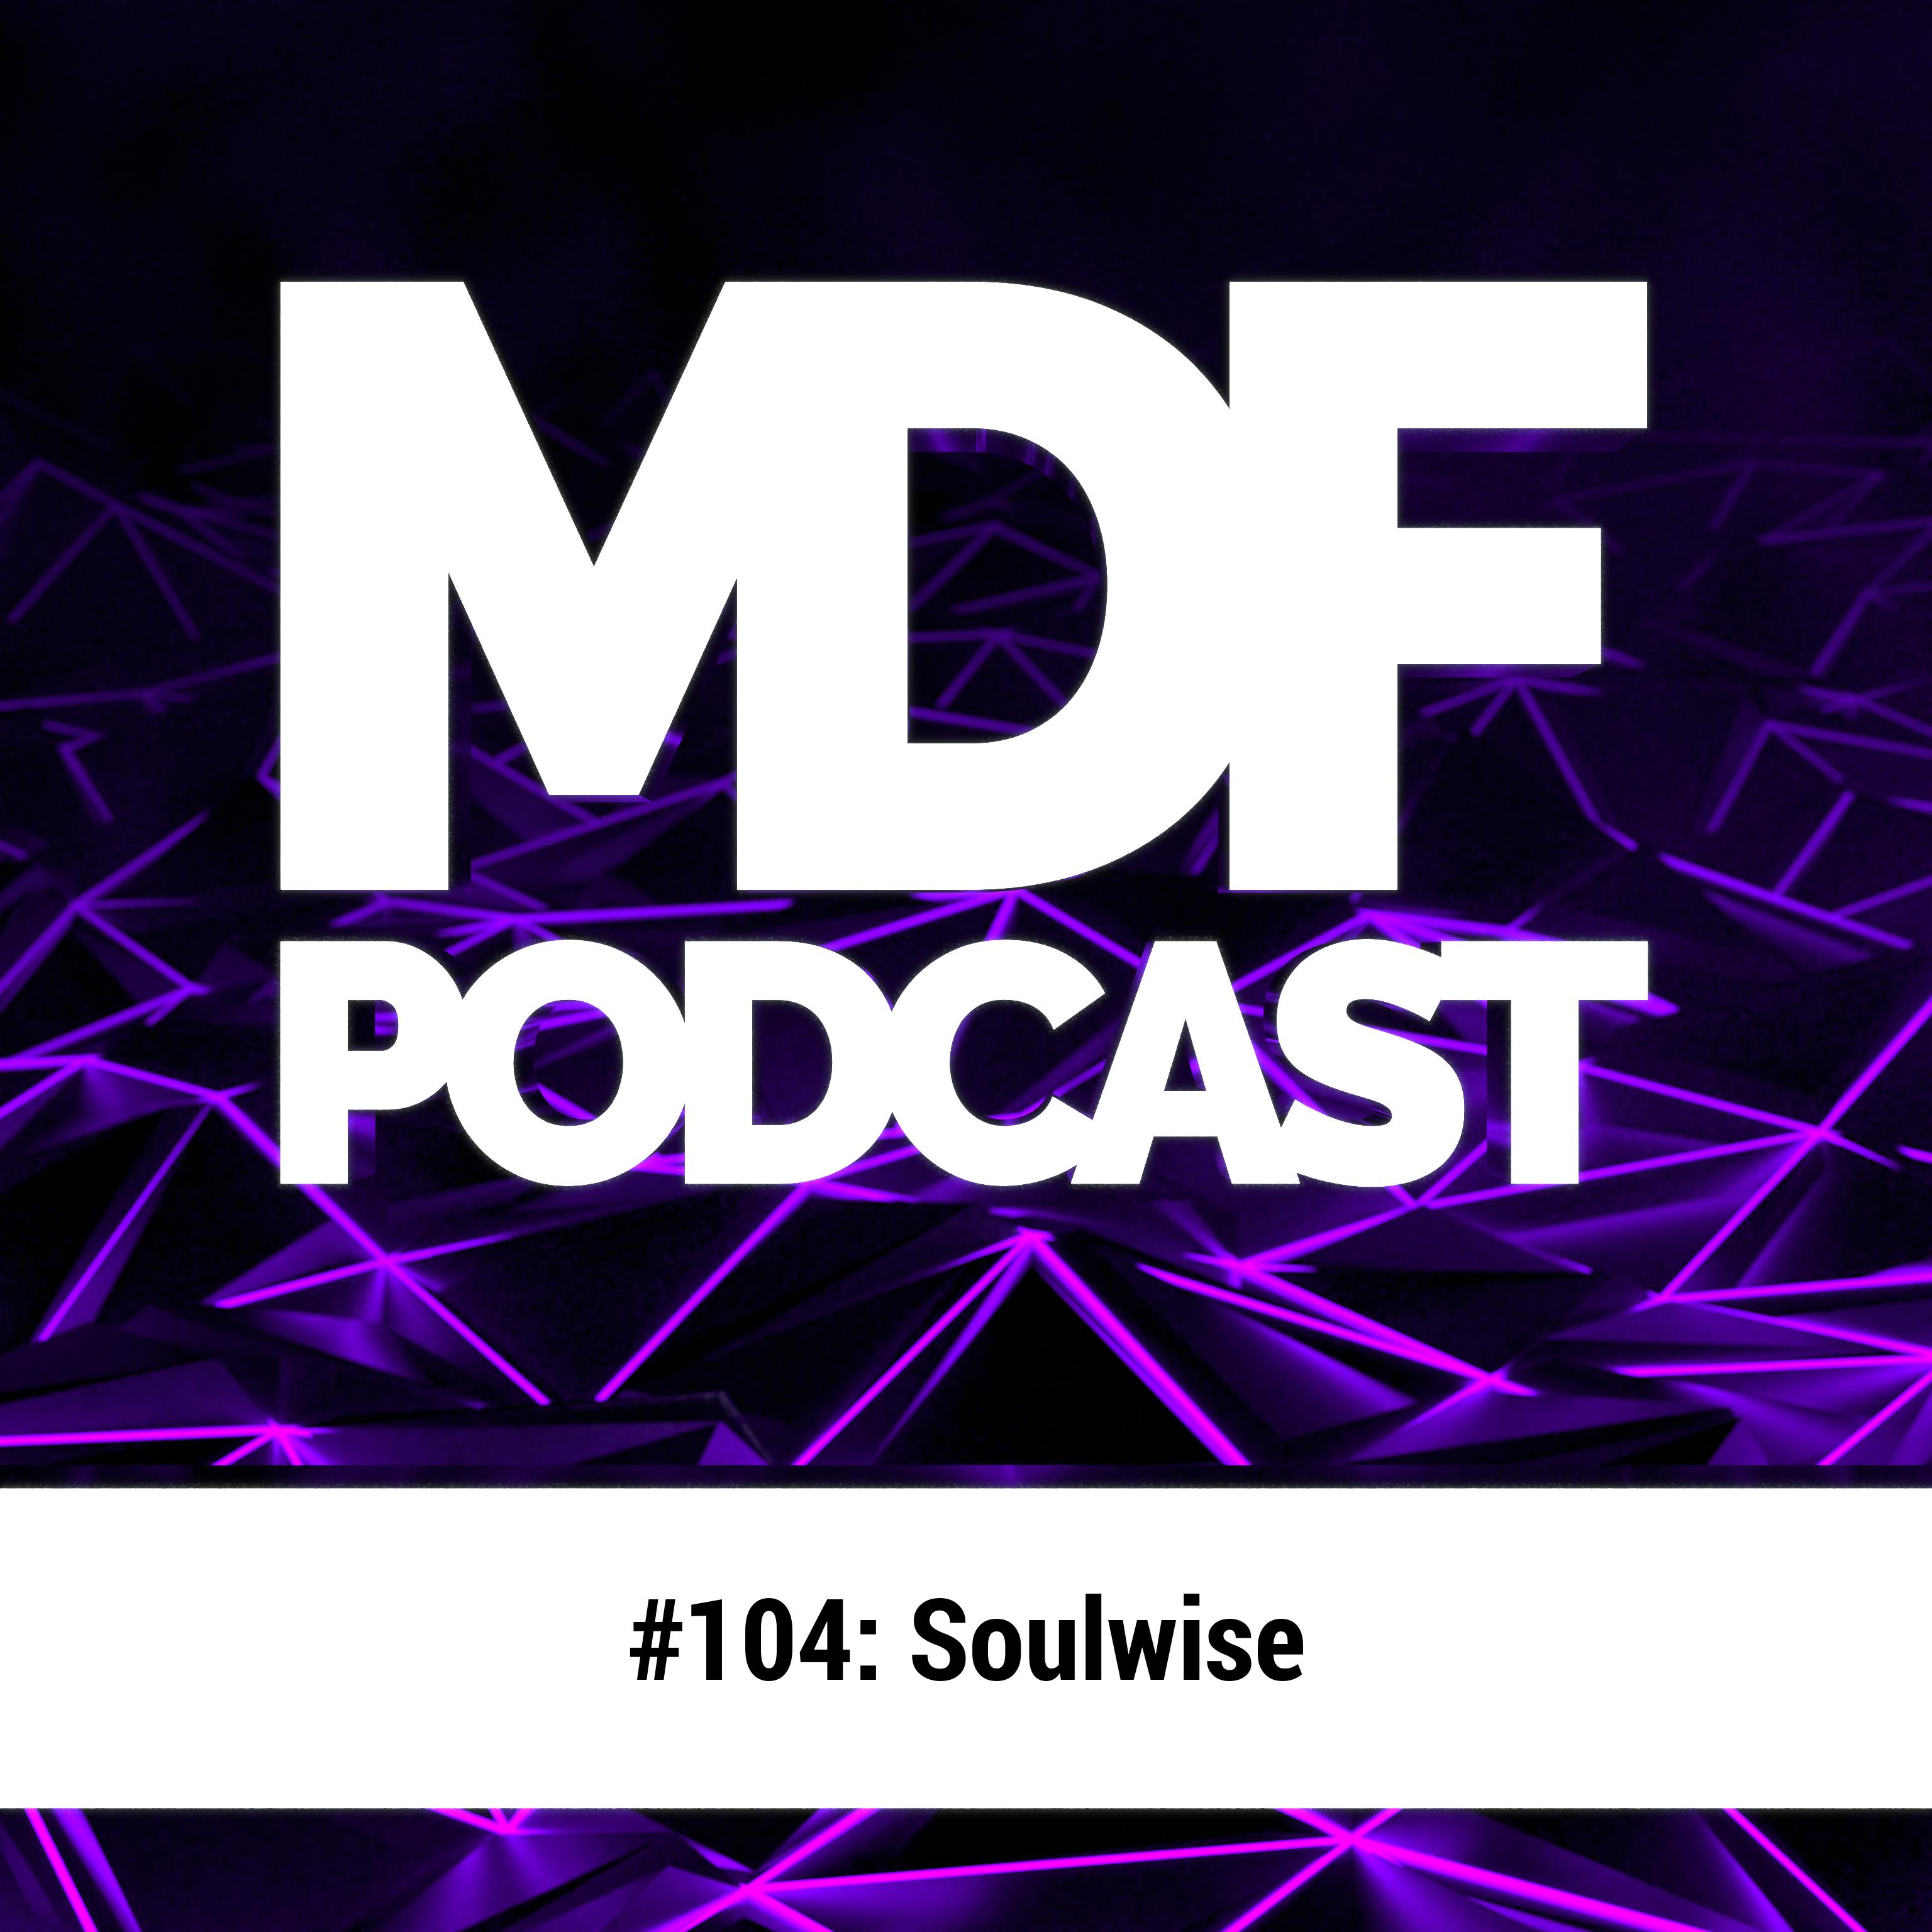 MDF Podcast 1o4